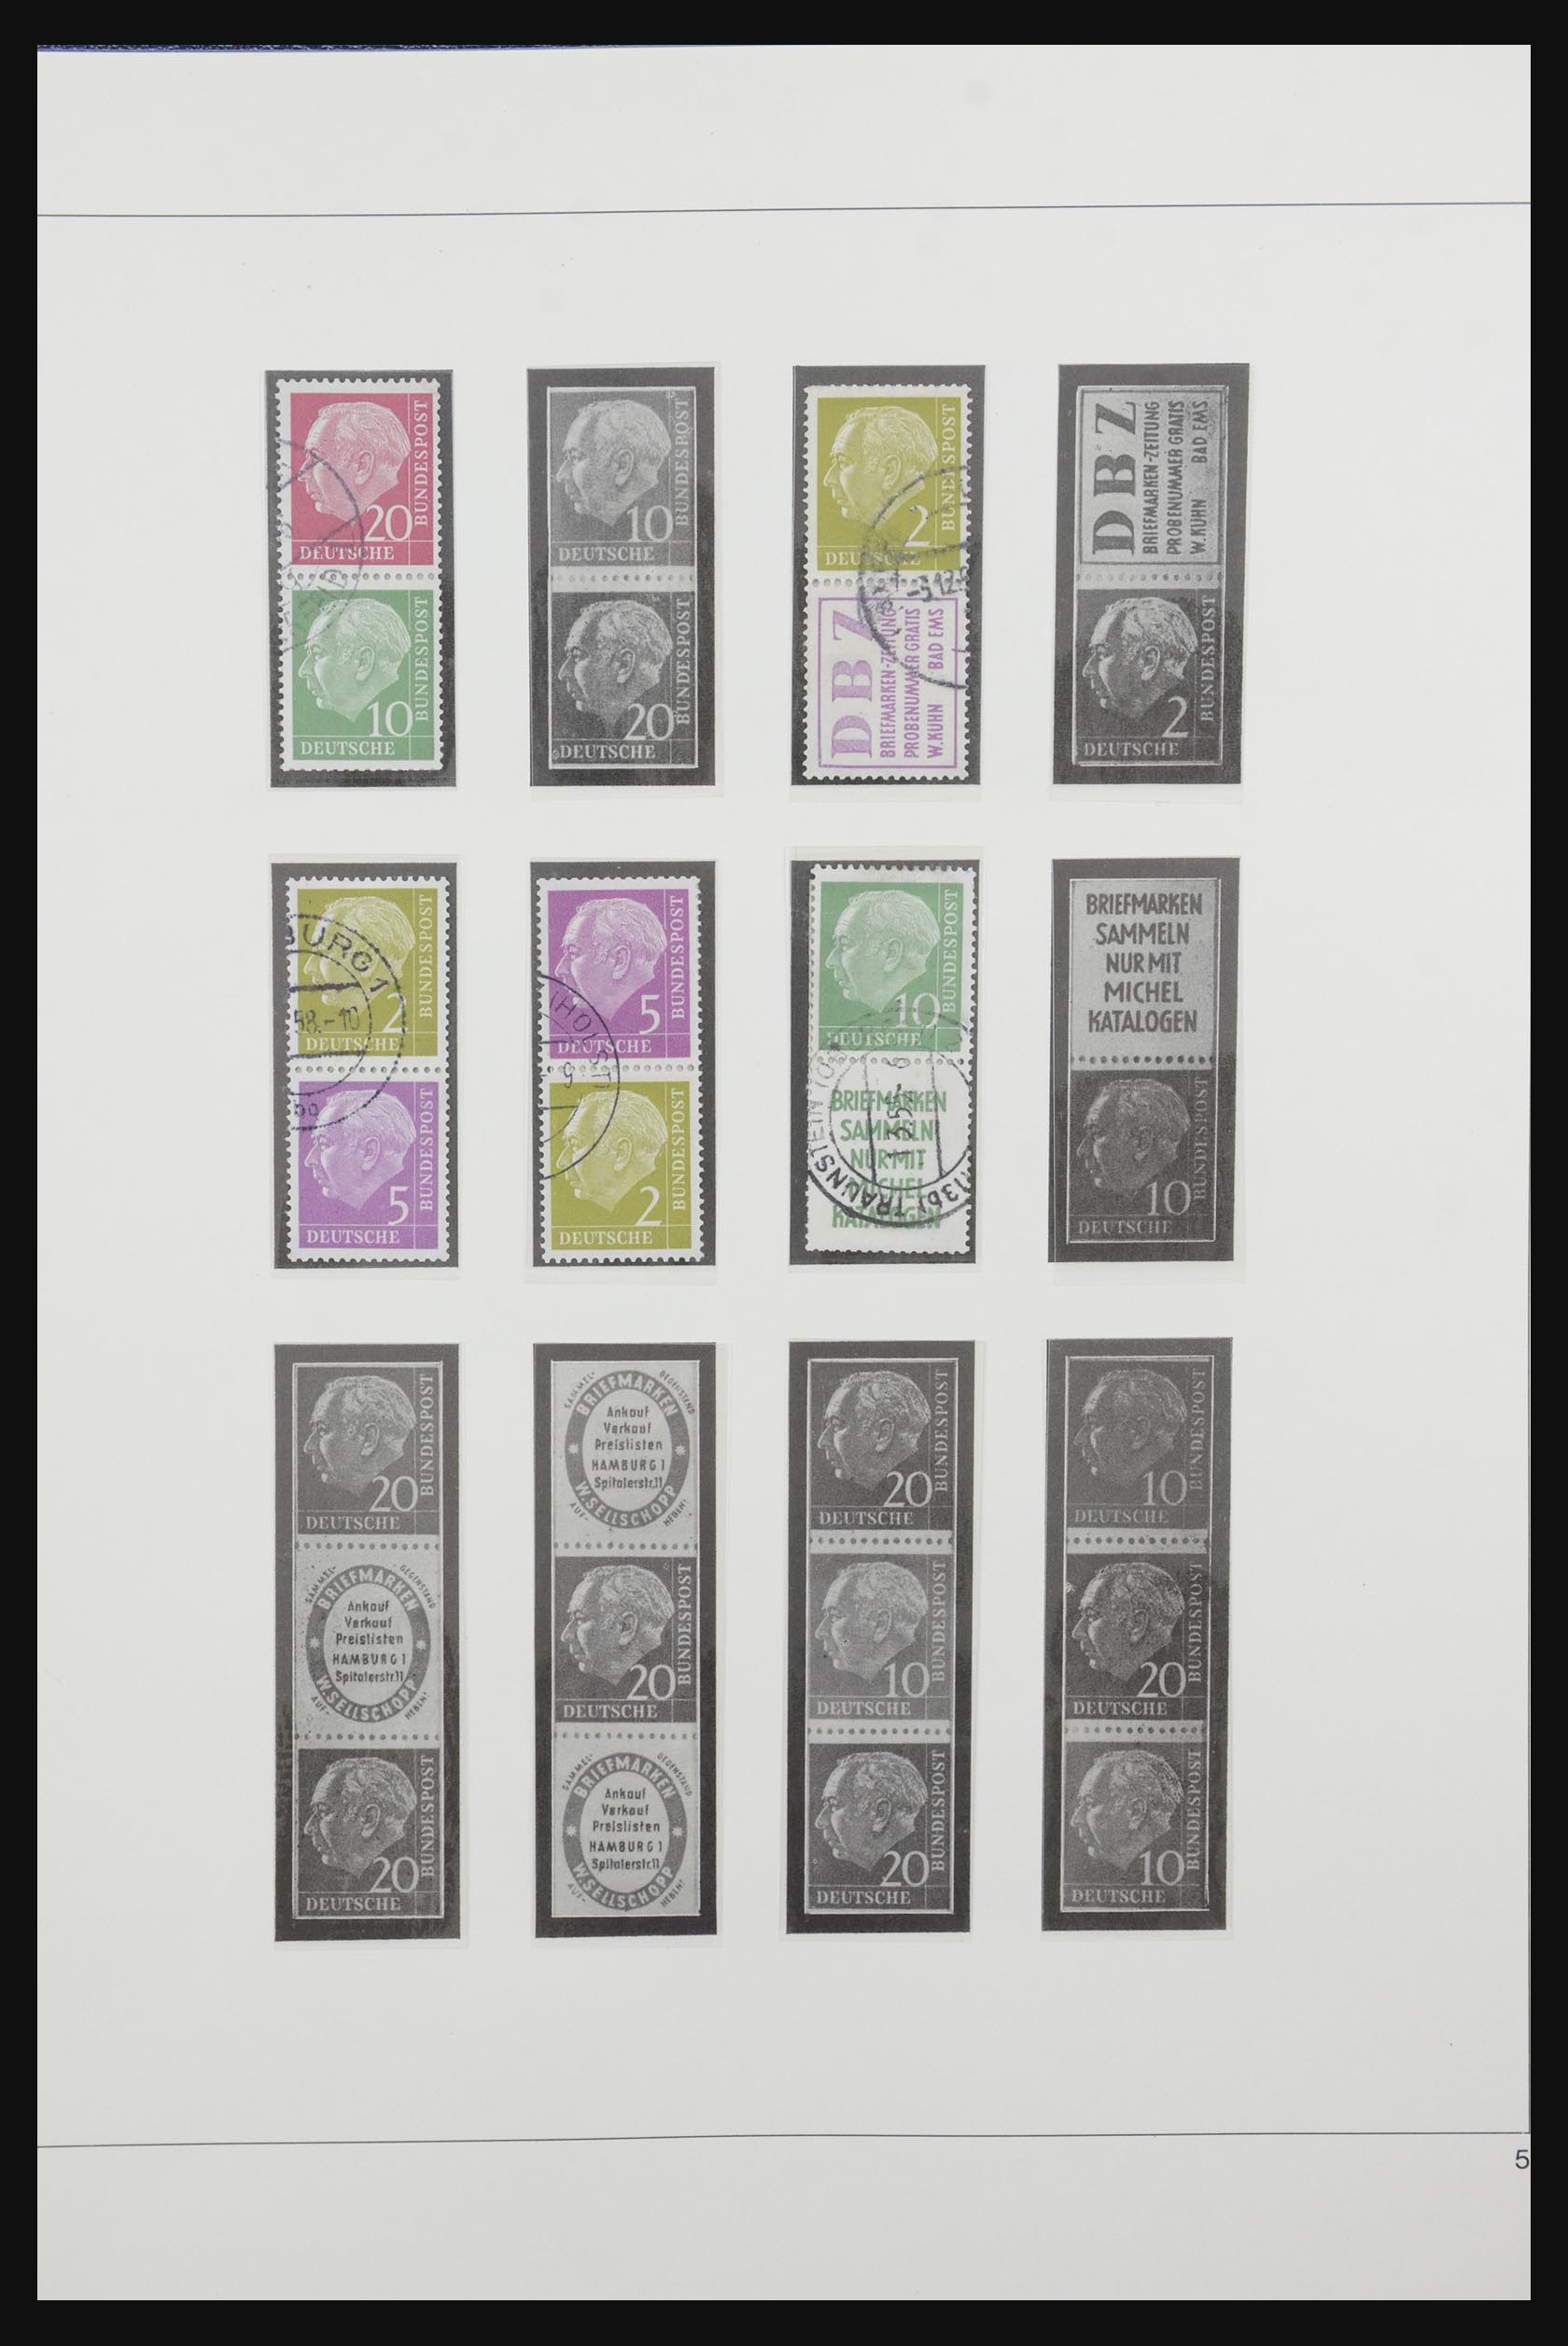 31842 006 - 31842 Bundespost combinaties 1951-2003.